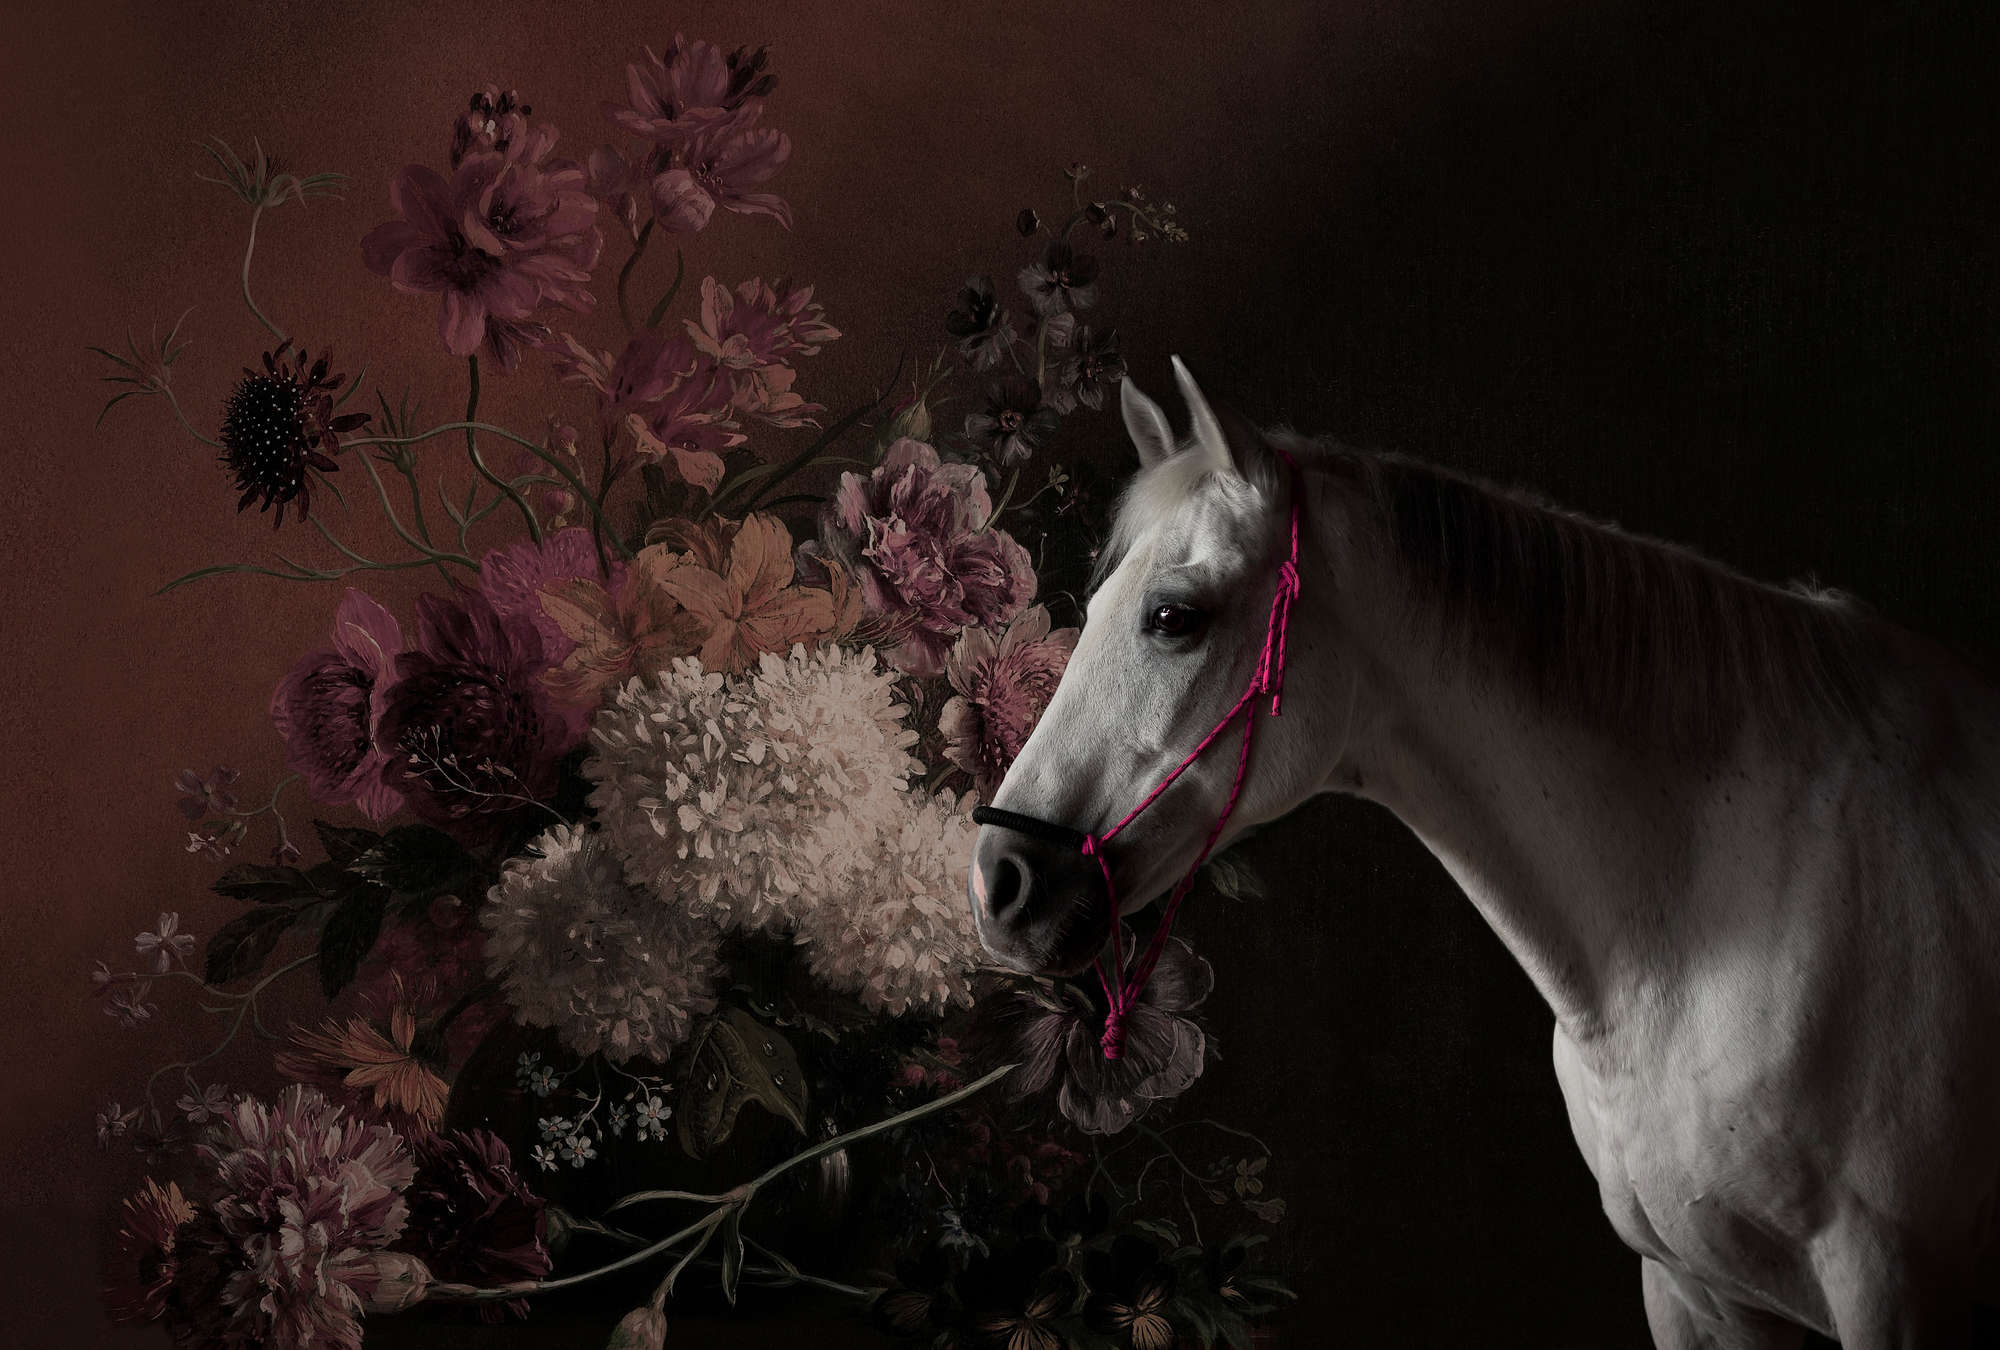             Papier peint Portrait de cheval avec fleurs - Walls by Patel
        